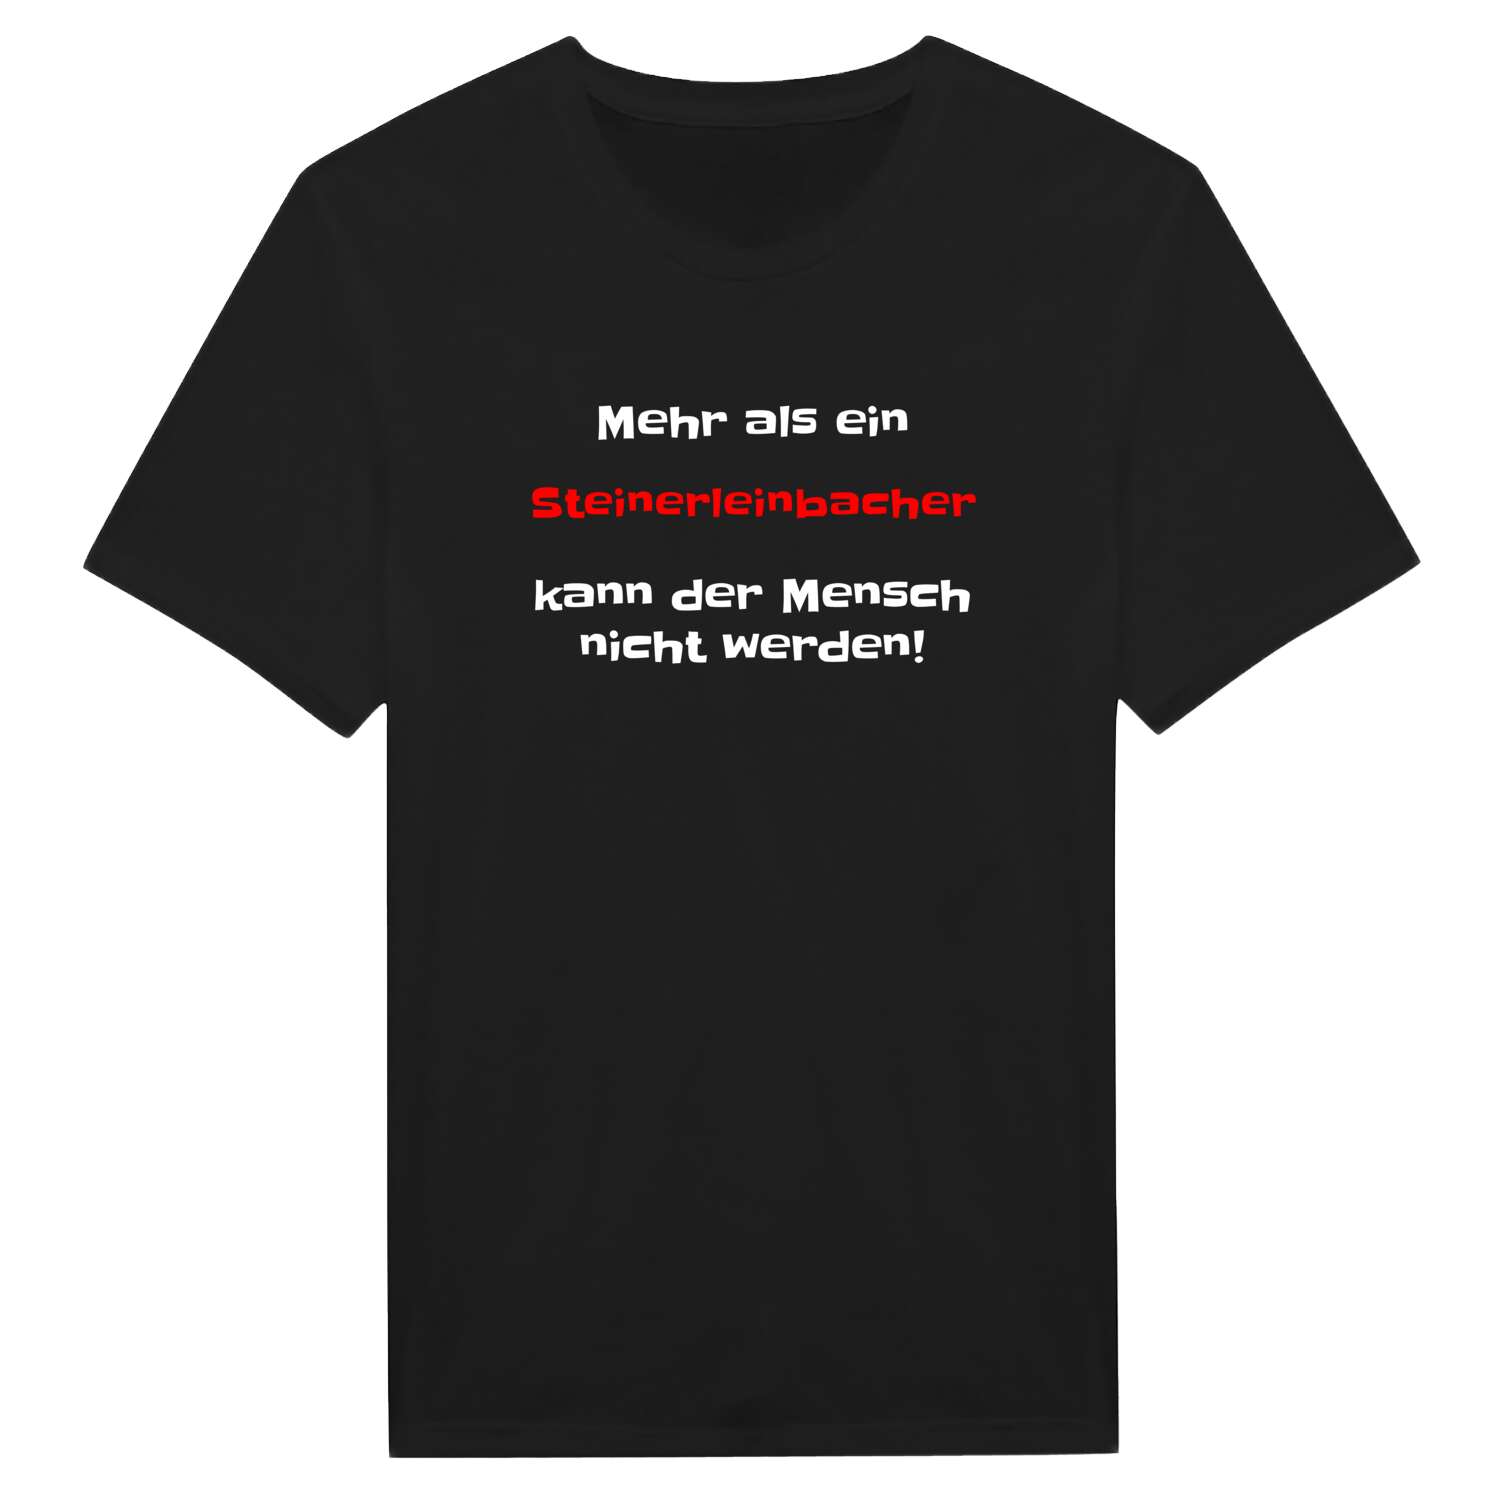 Steinerleinbach T-Shirt »Mehr als ein«